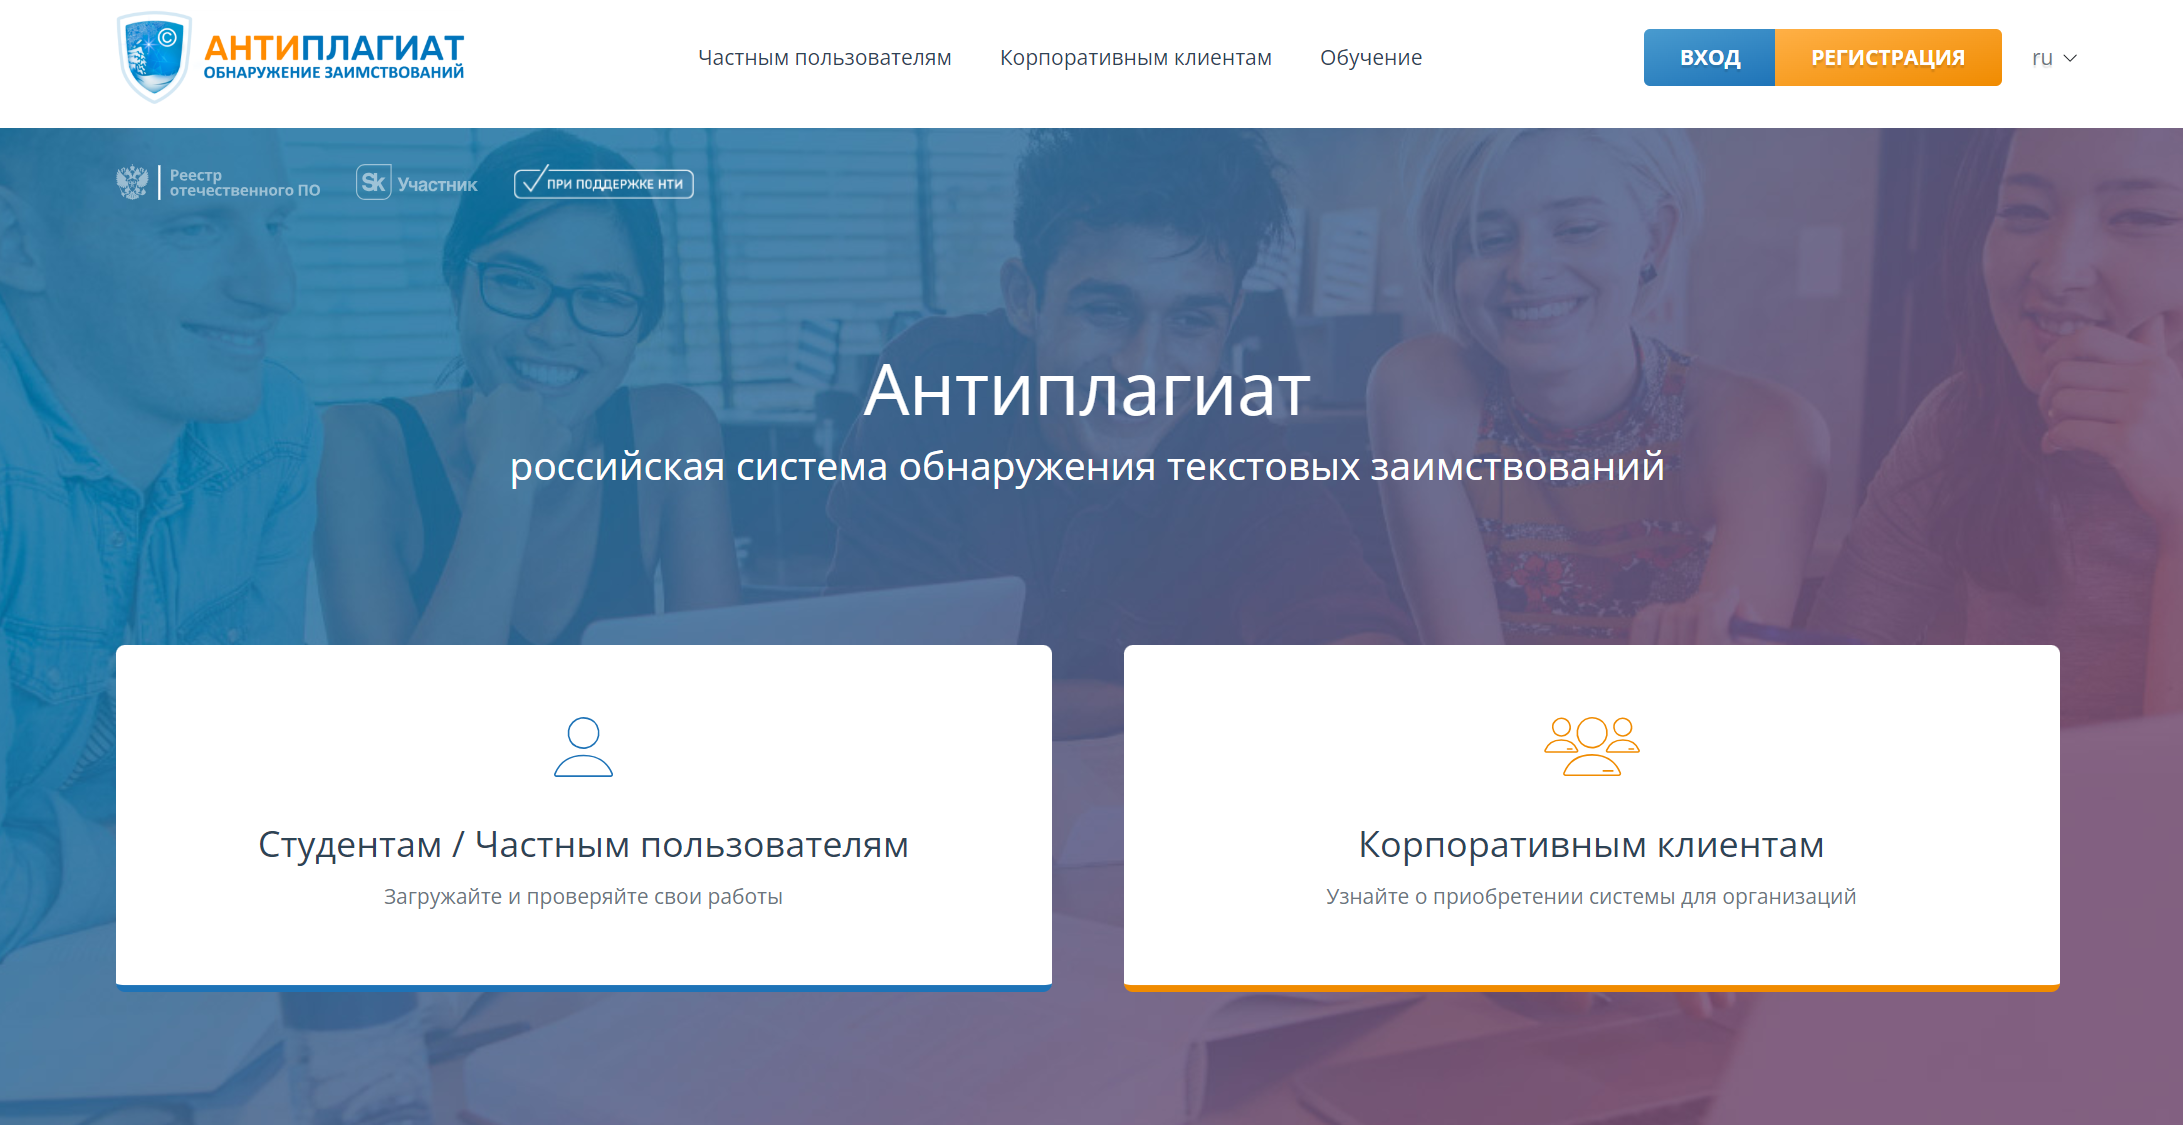 Как проверить текст на официальном сайте Антиплагиат.ру